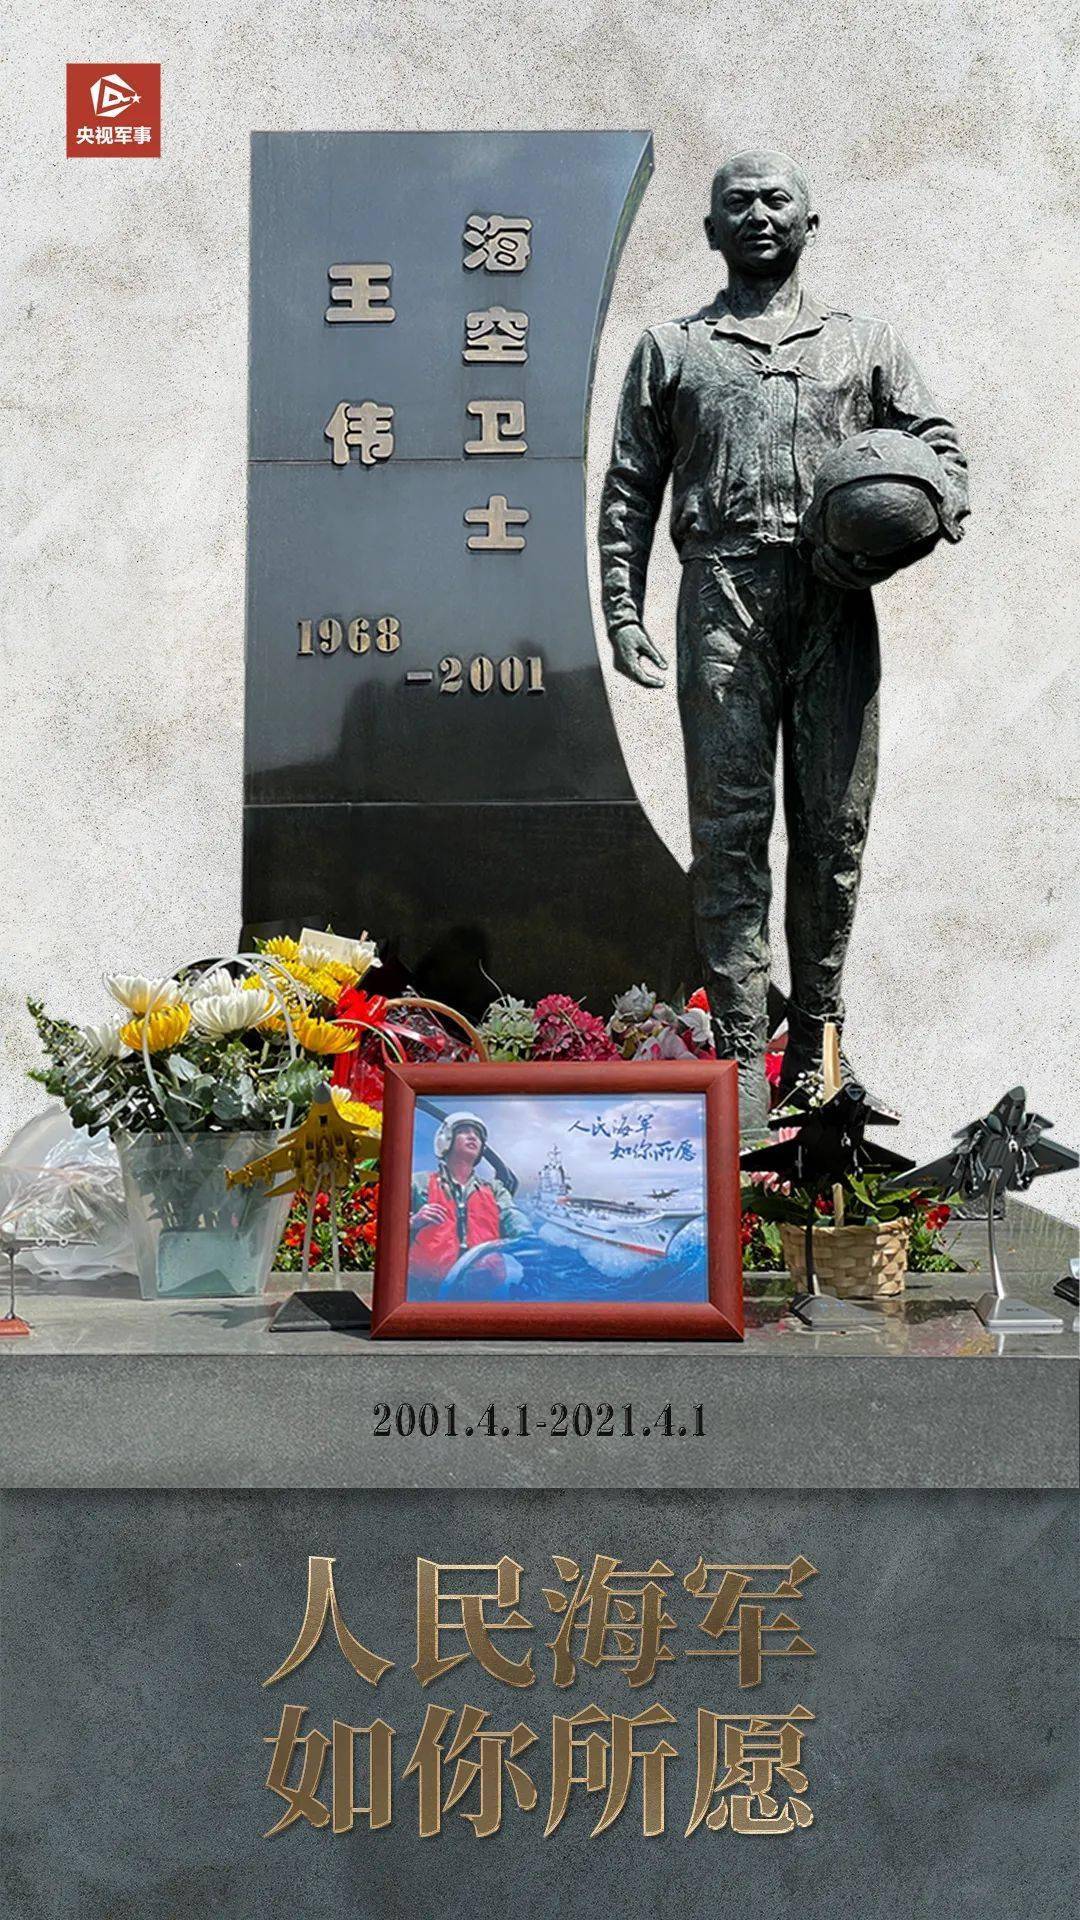 王伟墓前 多了一张特殊的照片 的航母